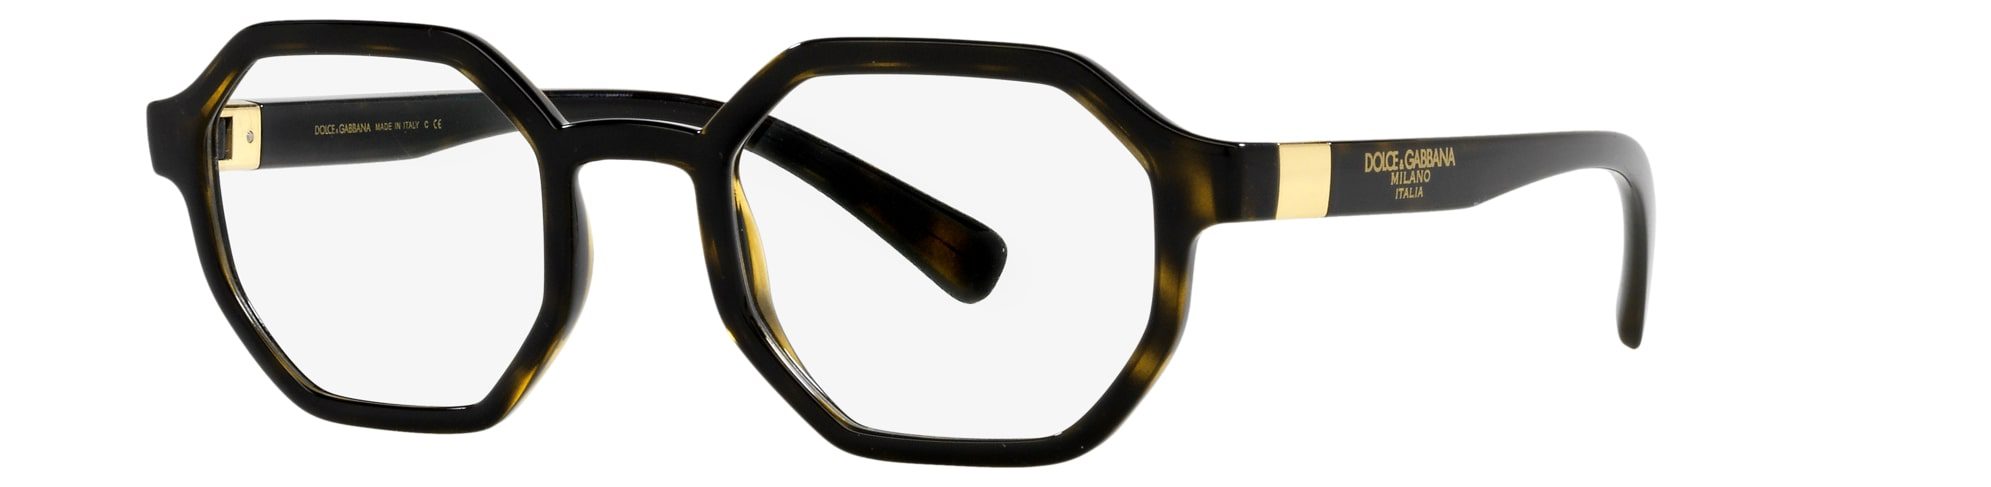 Nuovi_occhiali Dolce_&_Gabbana_Primavera_Estate_2021